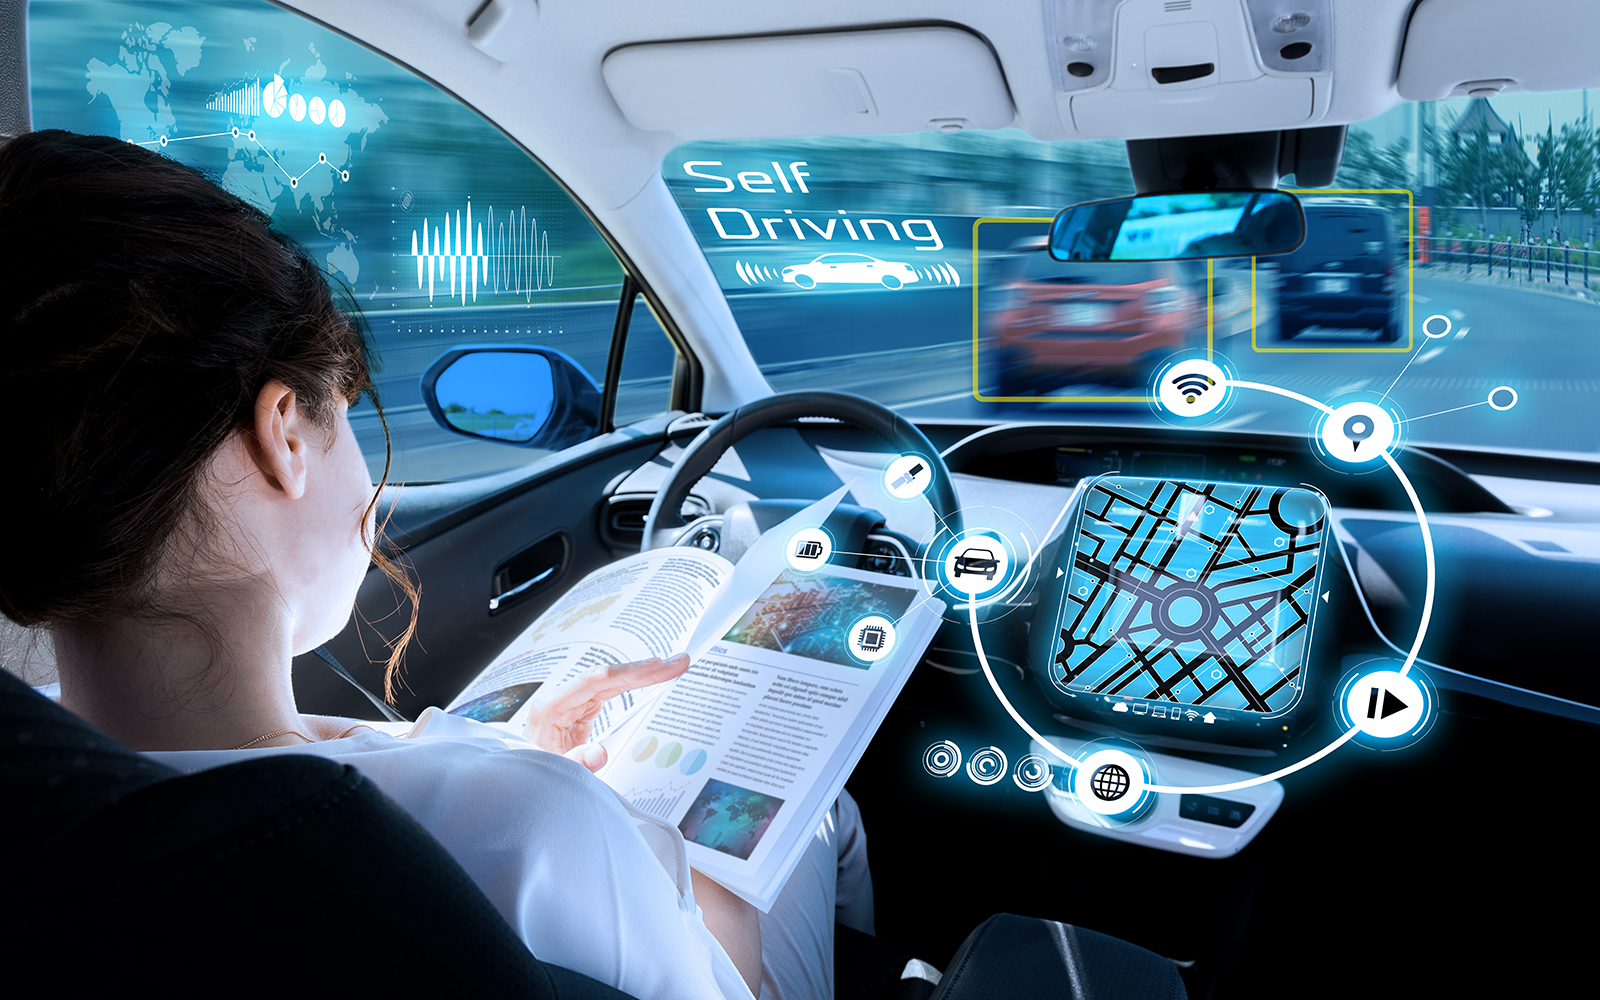 Αυτόνομα αυτοκίνητα τεχνολογία: Το μέλλον, οι ανησυχίες και οι επενδύσεις [vid]